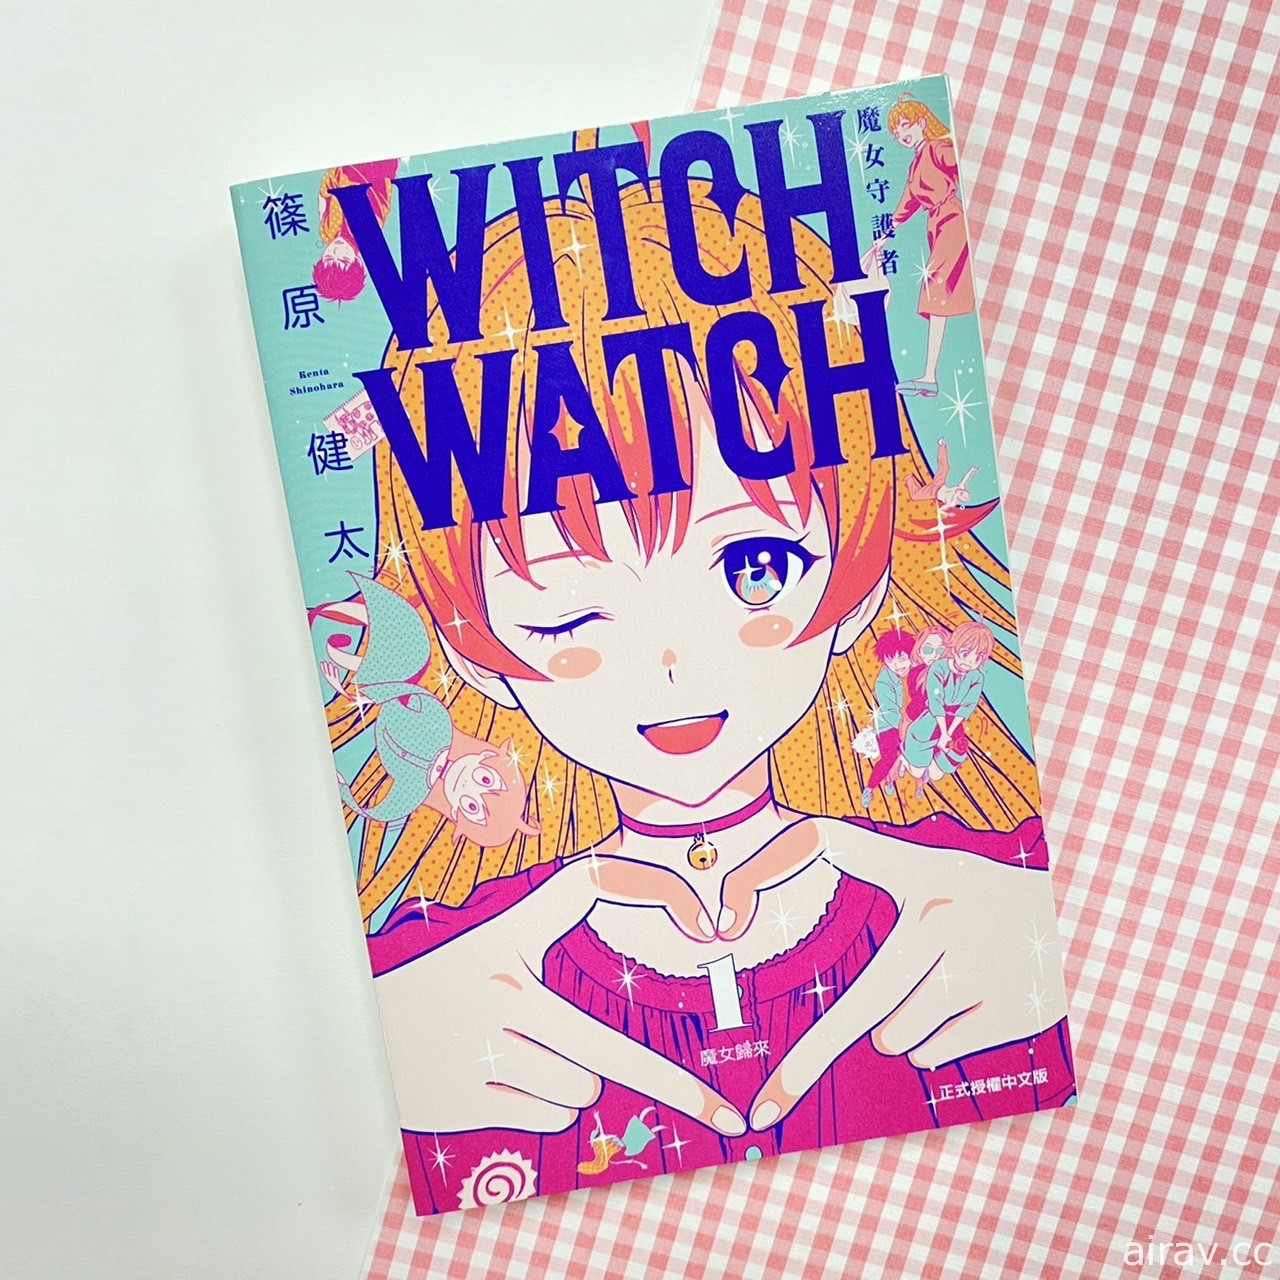 篠原健太《WITCH WATCH 魔女守護者》漫畫第 1 集在台上市